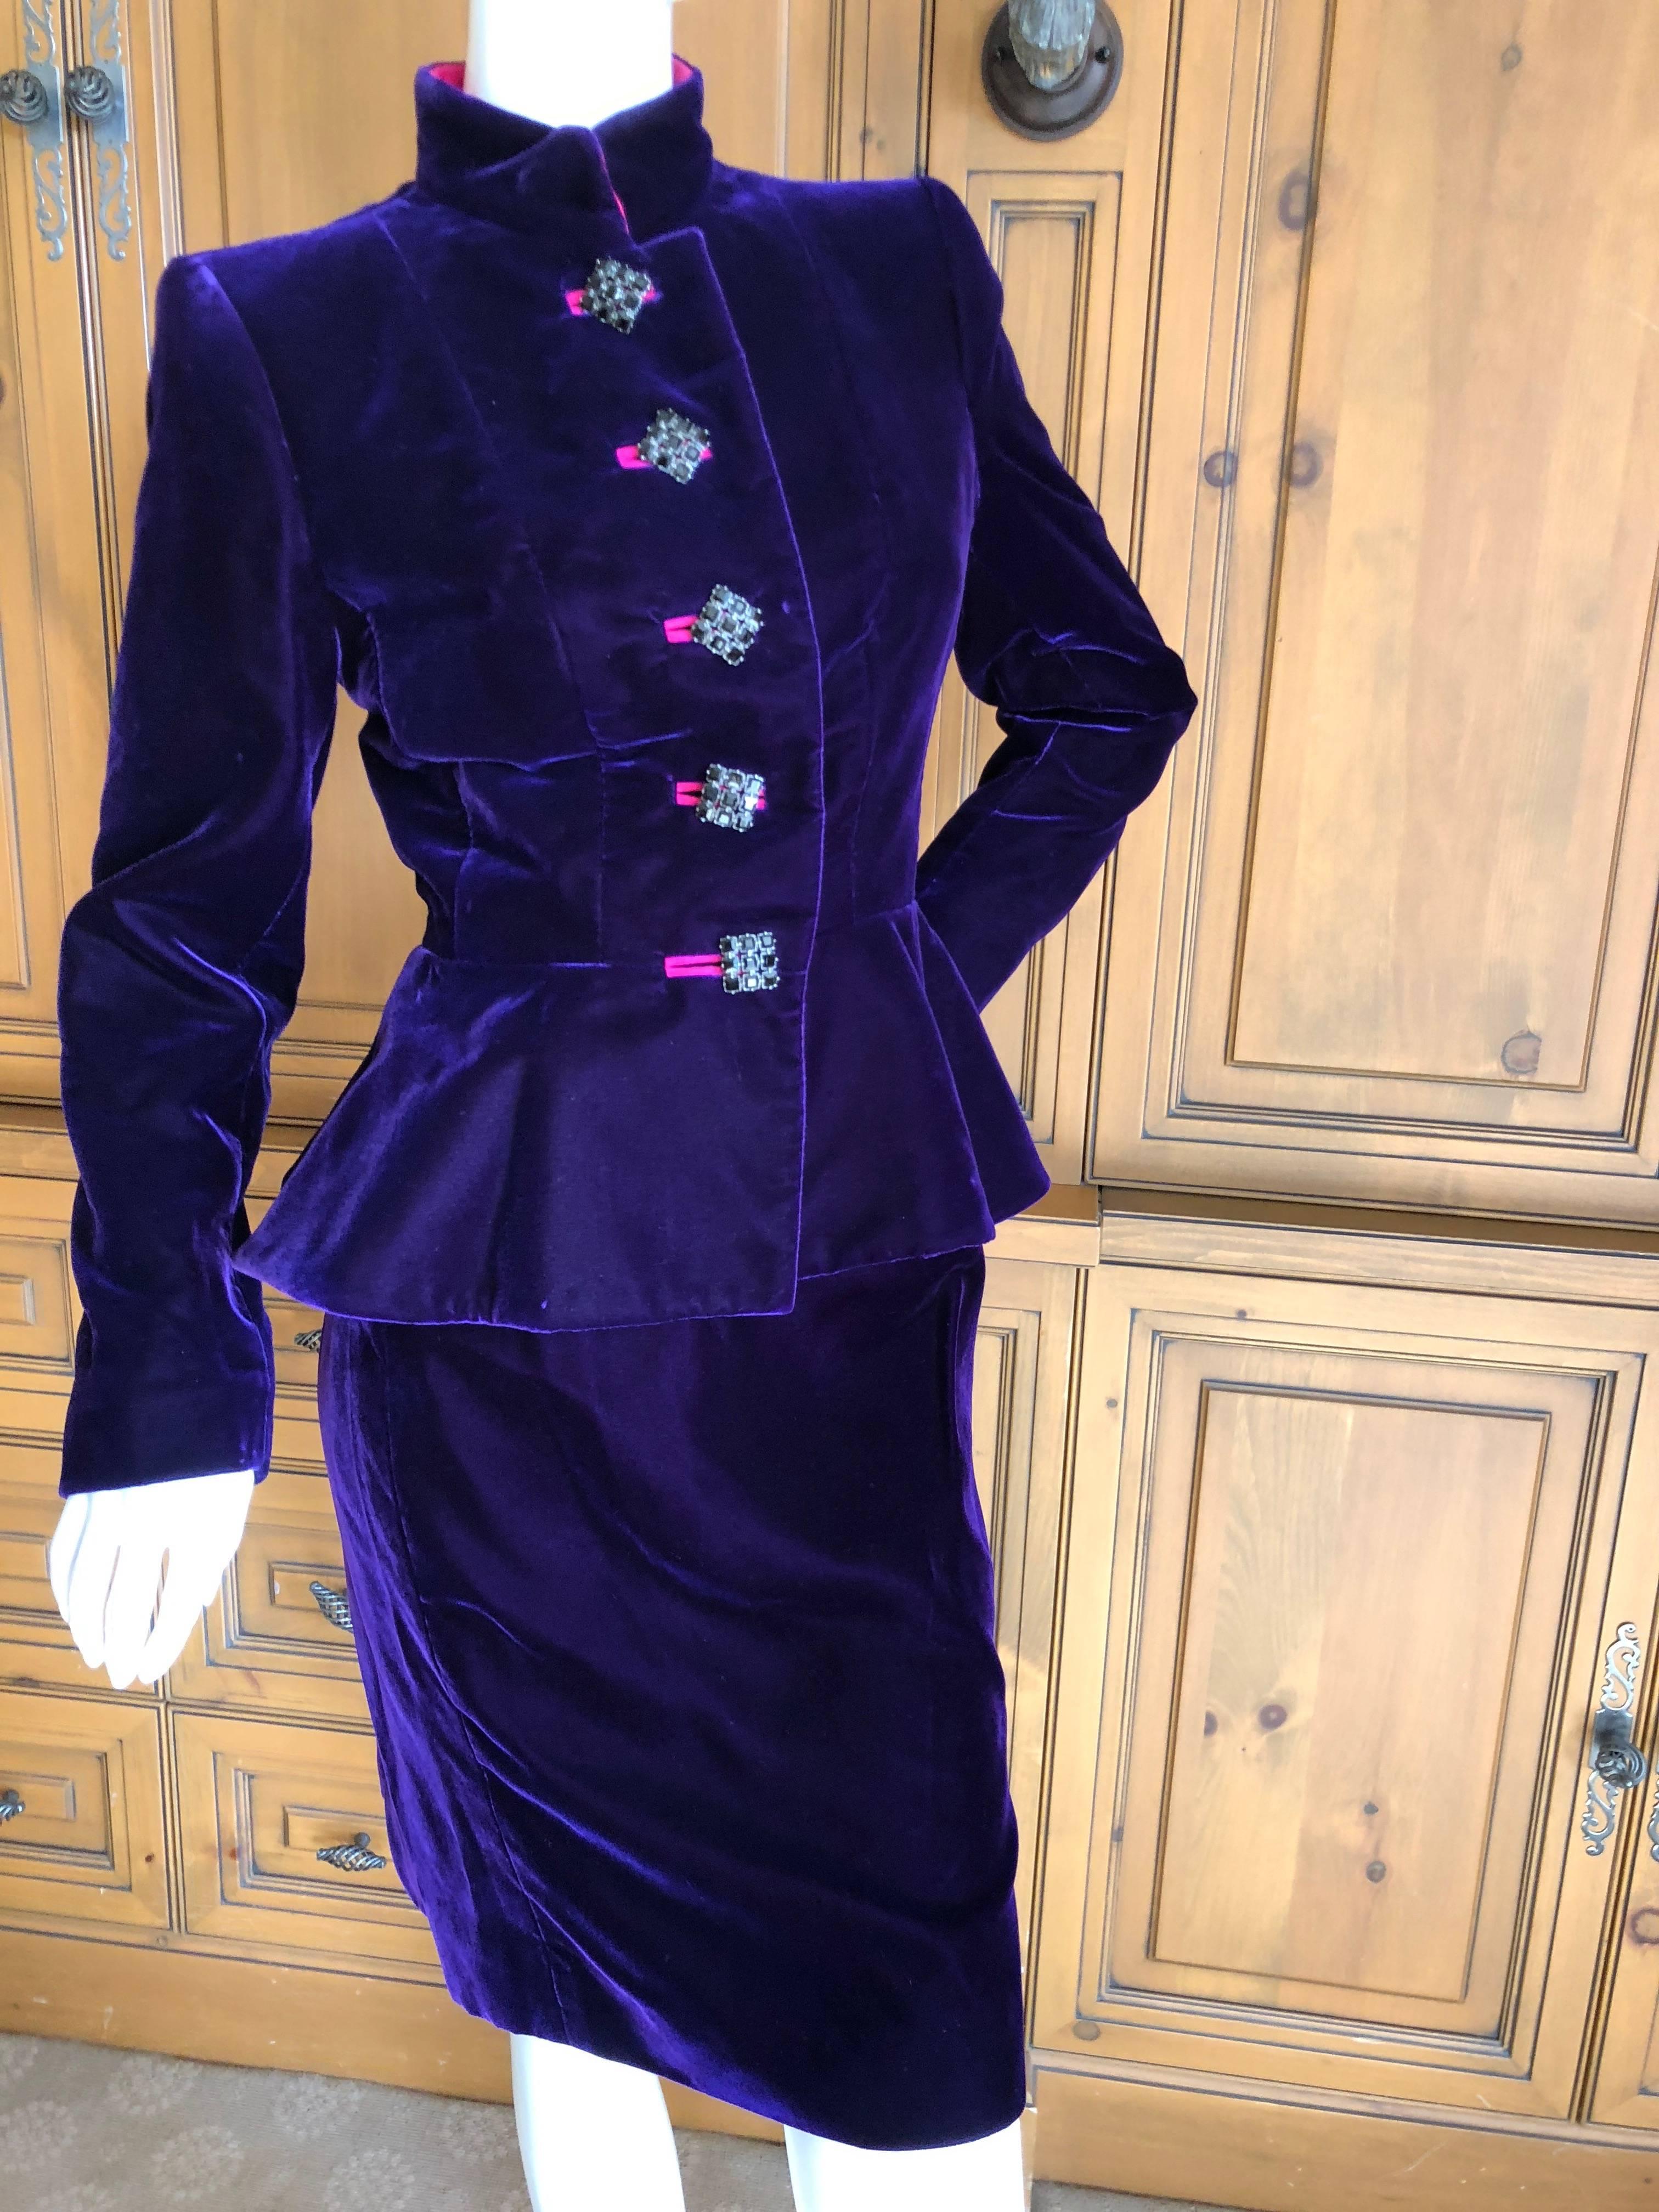 Yves Saint Laurent Rive Gauche 1970's Purple Velvet Suit w Hot Pink Moire Trim
Size 36
Bust 36